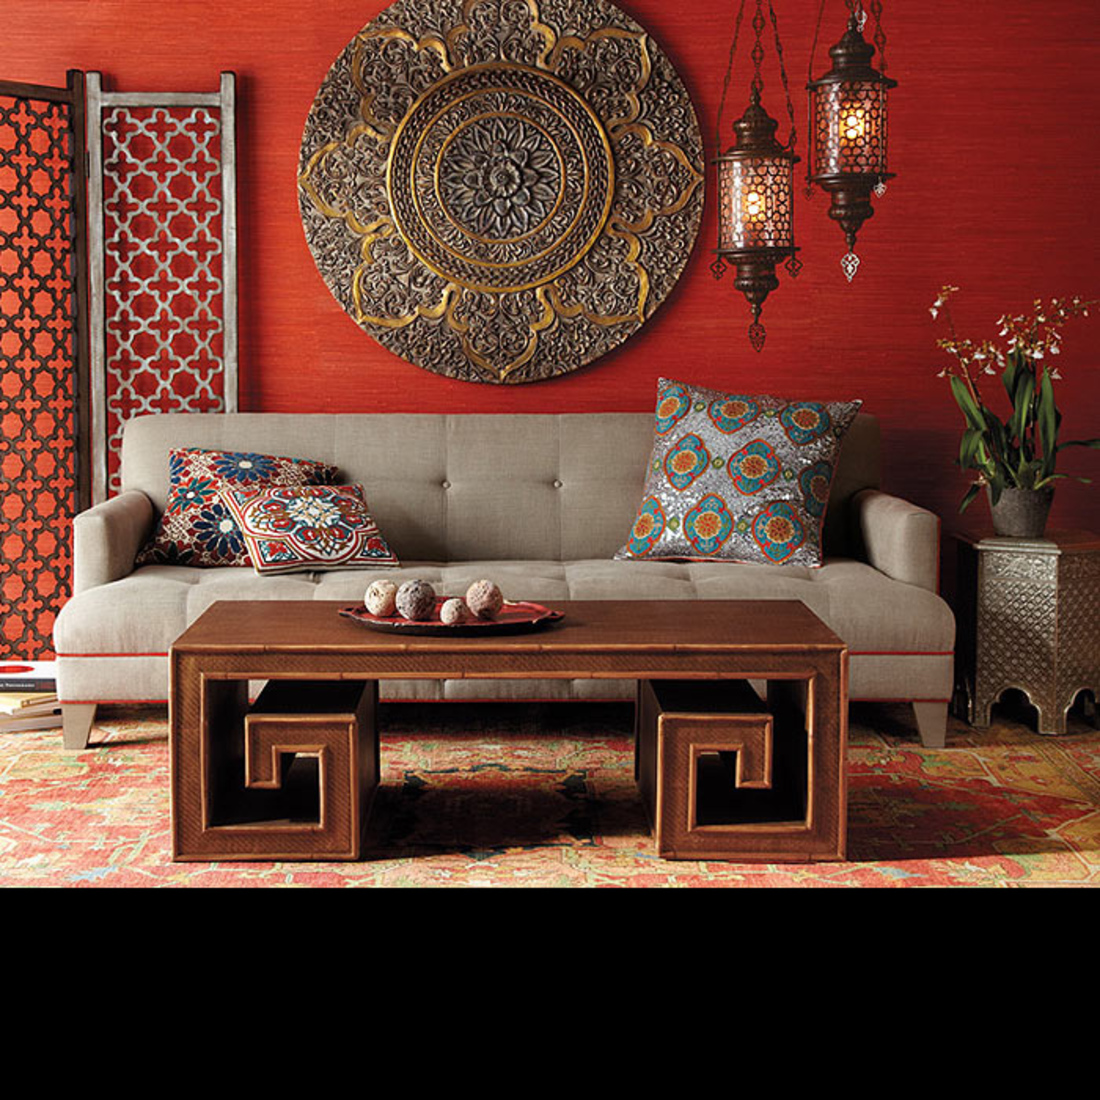 мебель в индийском стиле